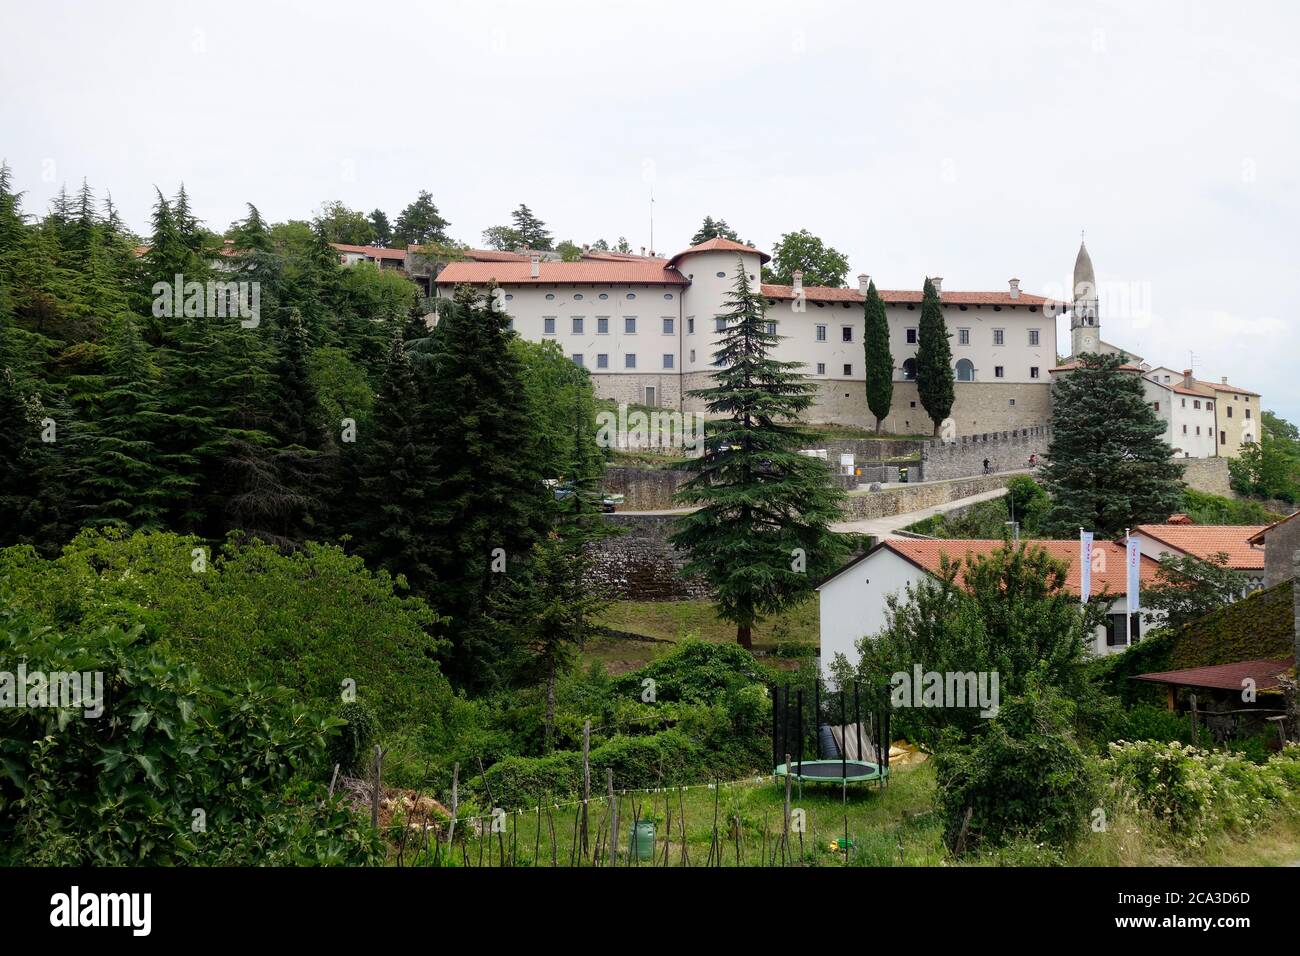 Pueblo de Štanjel y castillo medieval renovado. Municipio de Komen, región de Kras, Eslovenia. Foto de stock